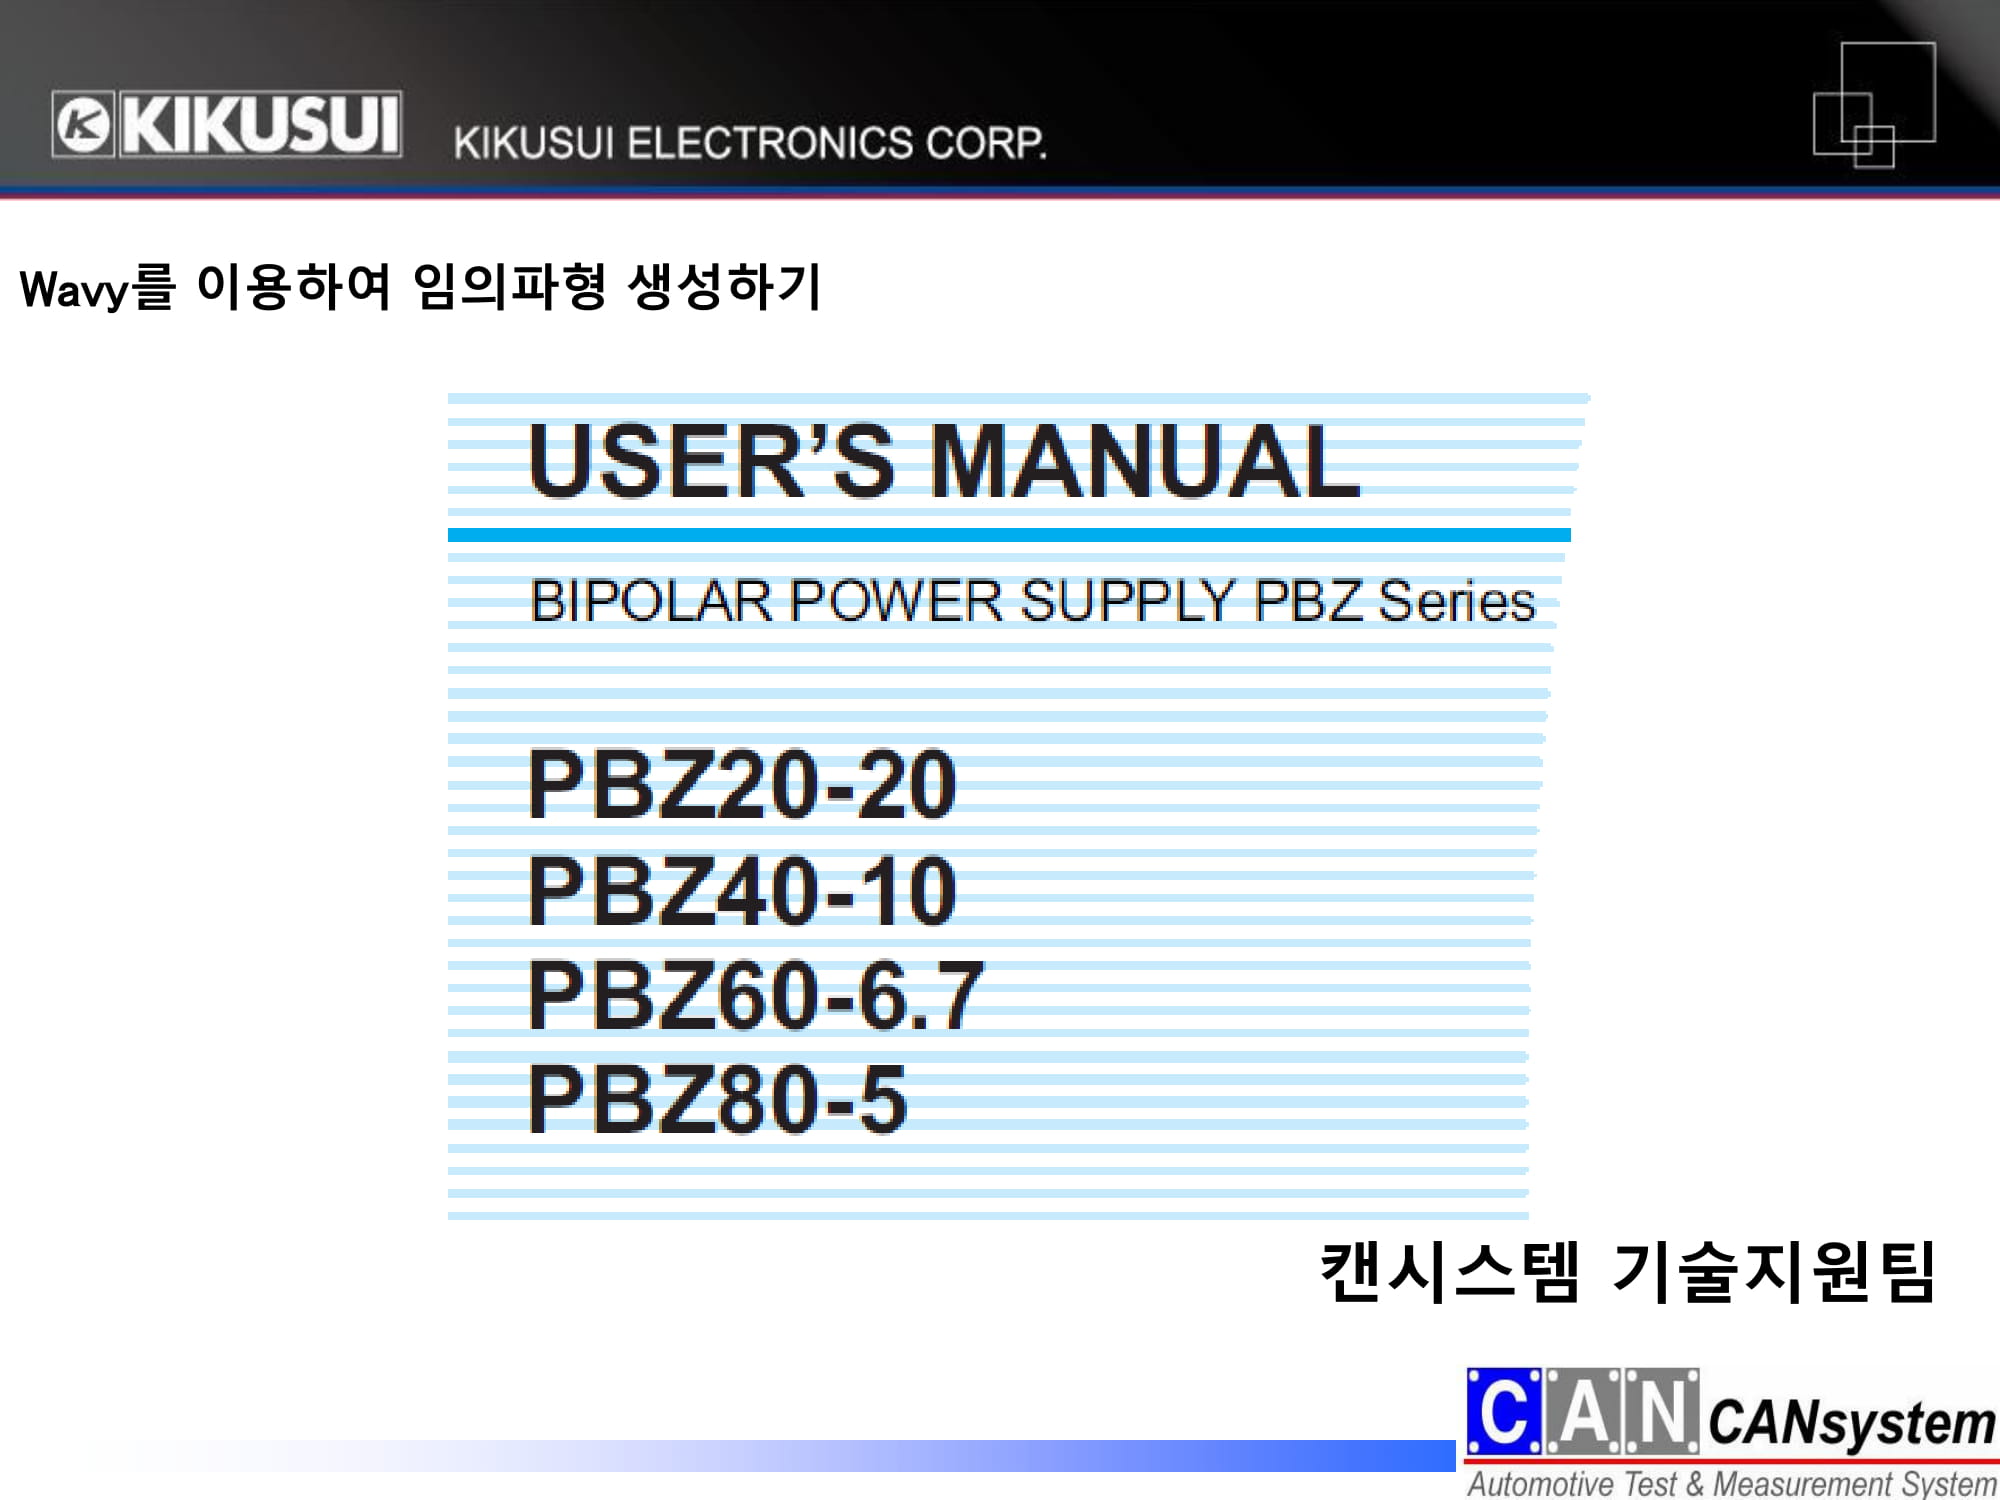 KIKUSUI PBZ wavy 임의파형만들기 이용가이드-01.jpg